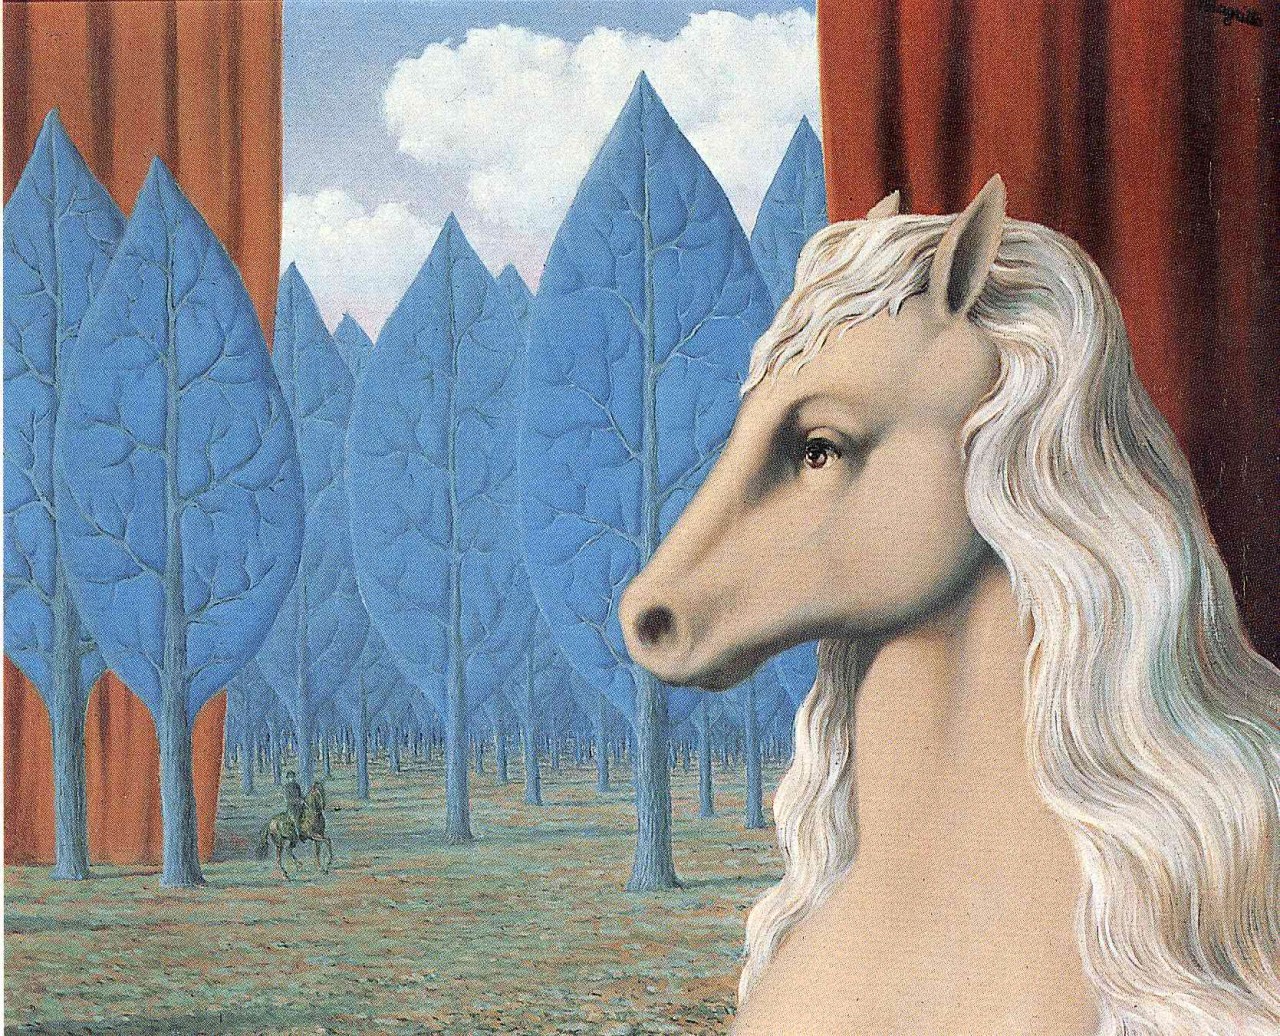 Tác phẩm Lý tính thuần khiết (The pure reason) của Rene Magritte năm 1948.